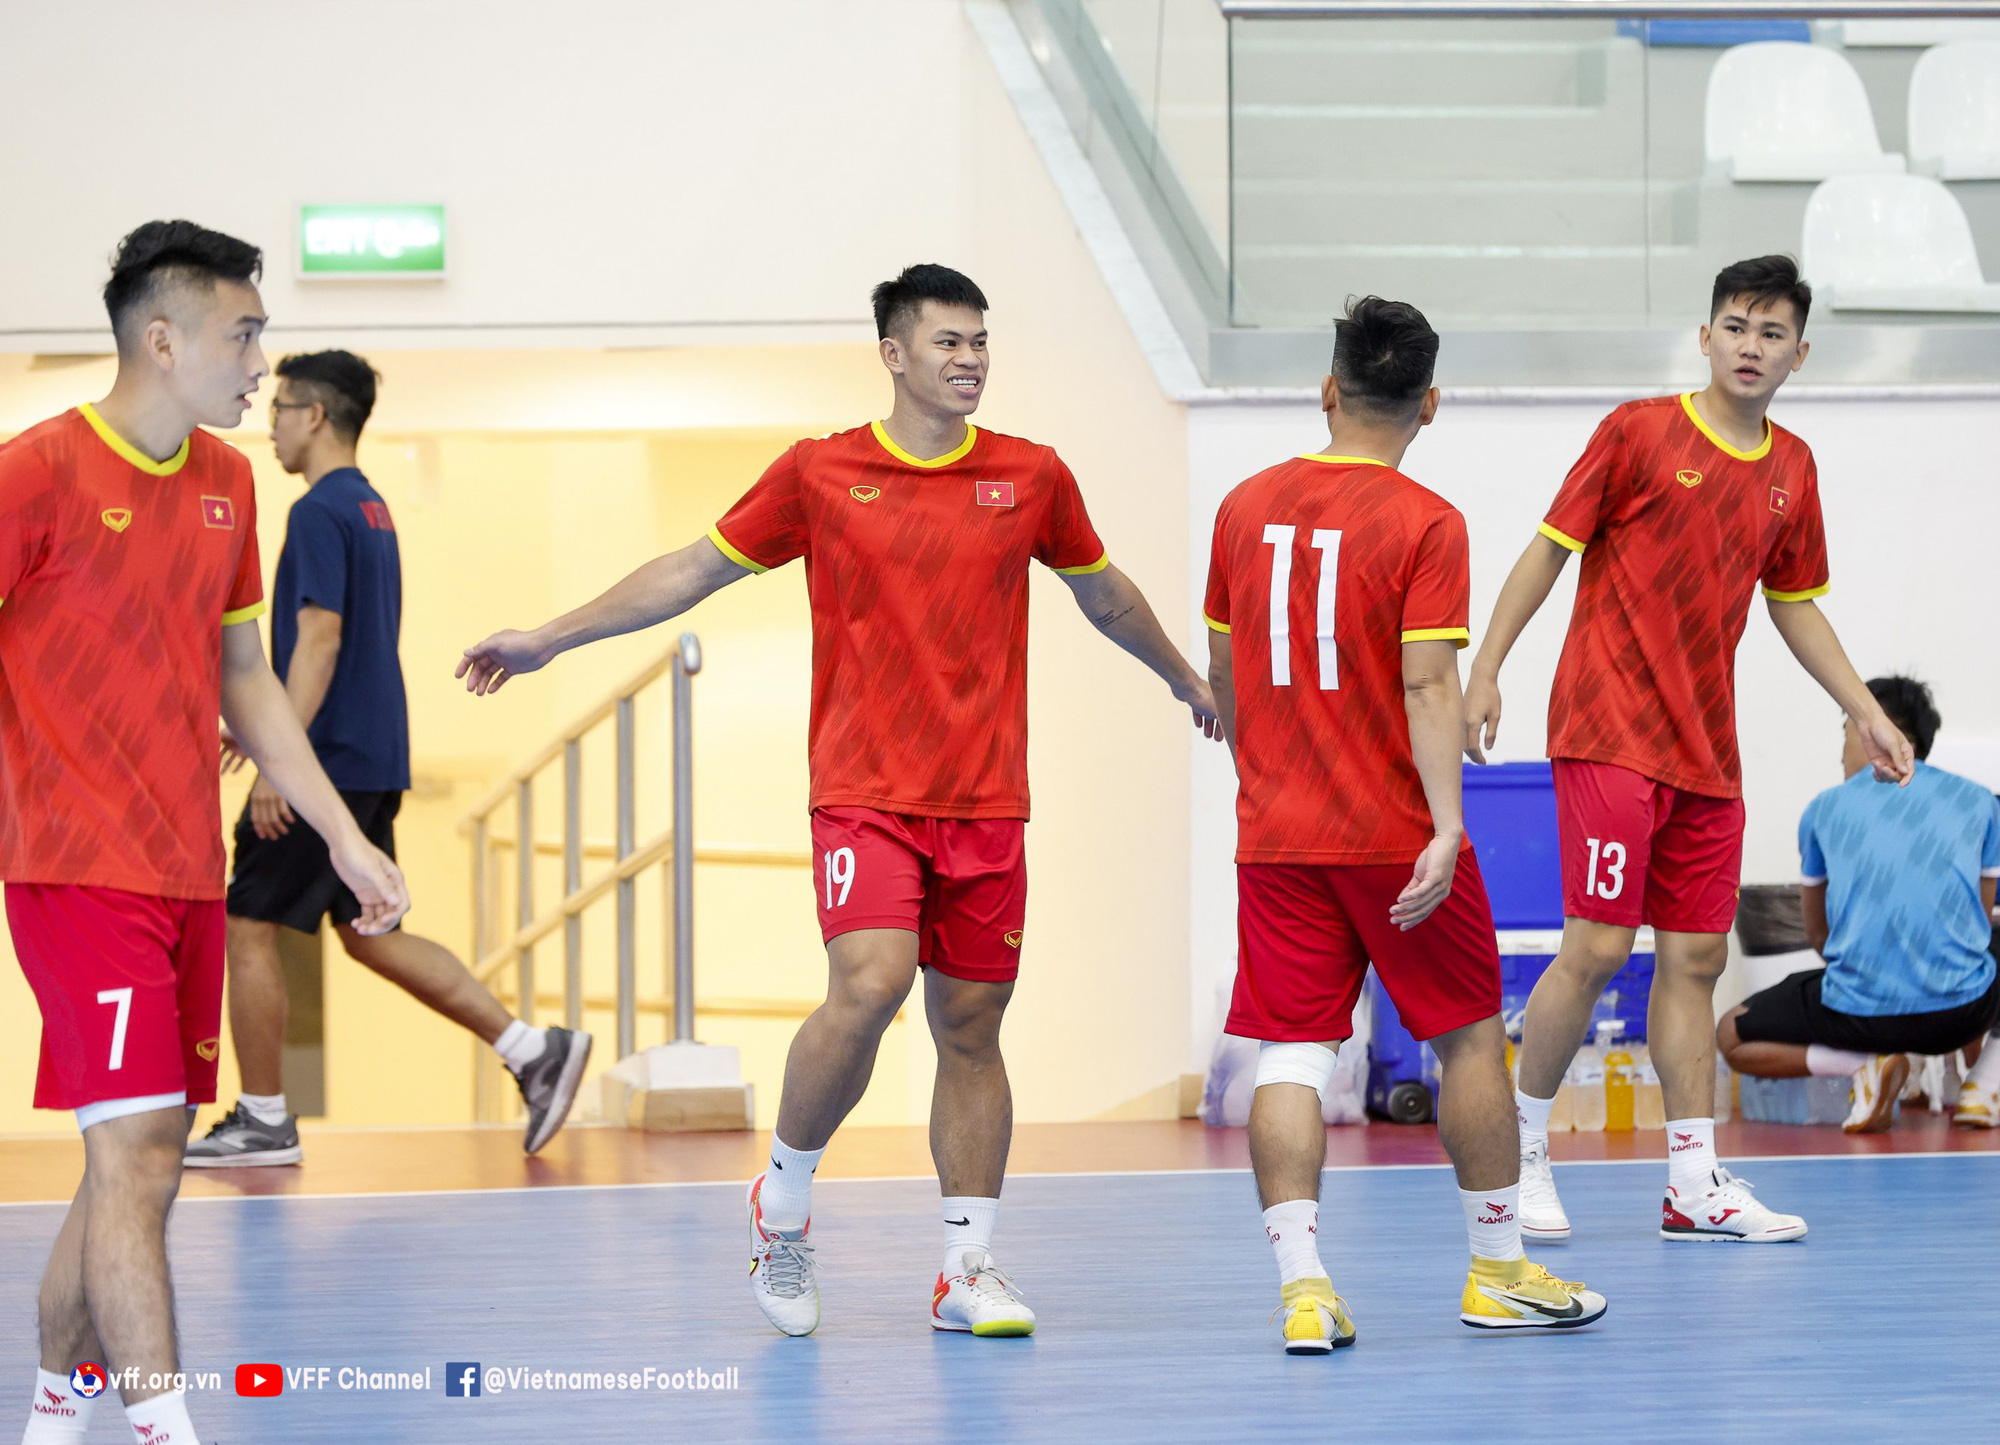 ĐT Việt Nam đẩy cao khối lượng, chọn điểm rơi trước thềm VCK futsal châu Á 2022